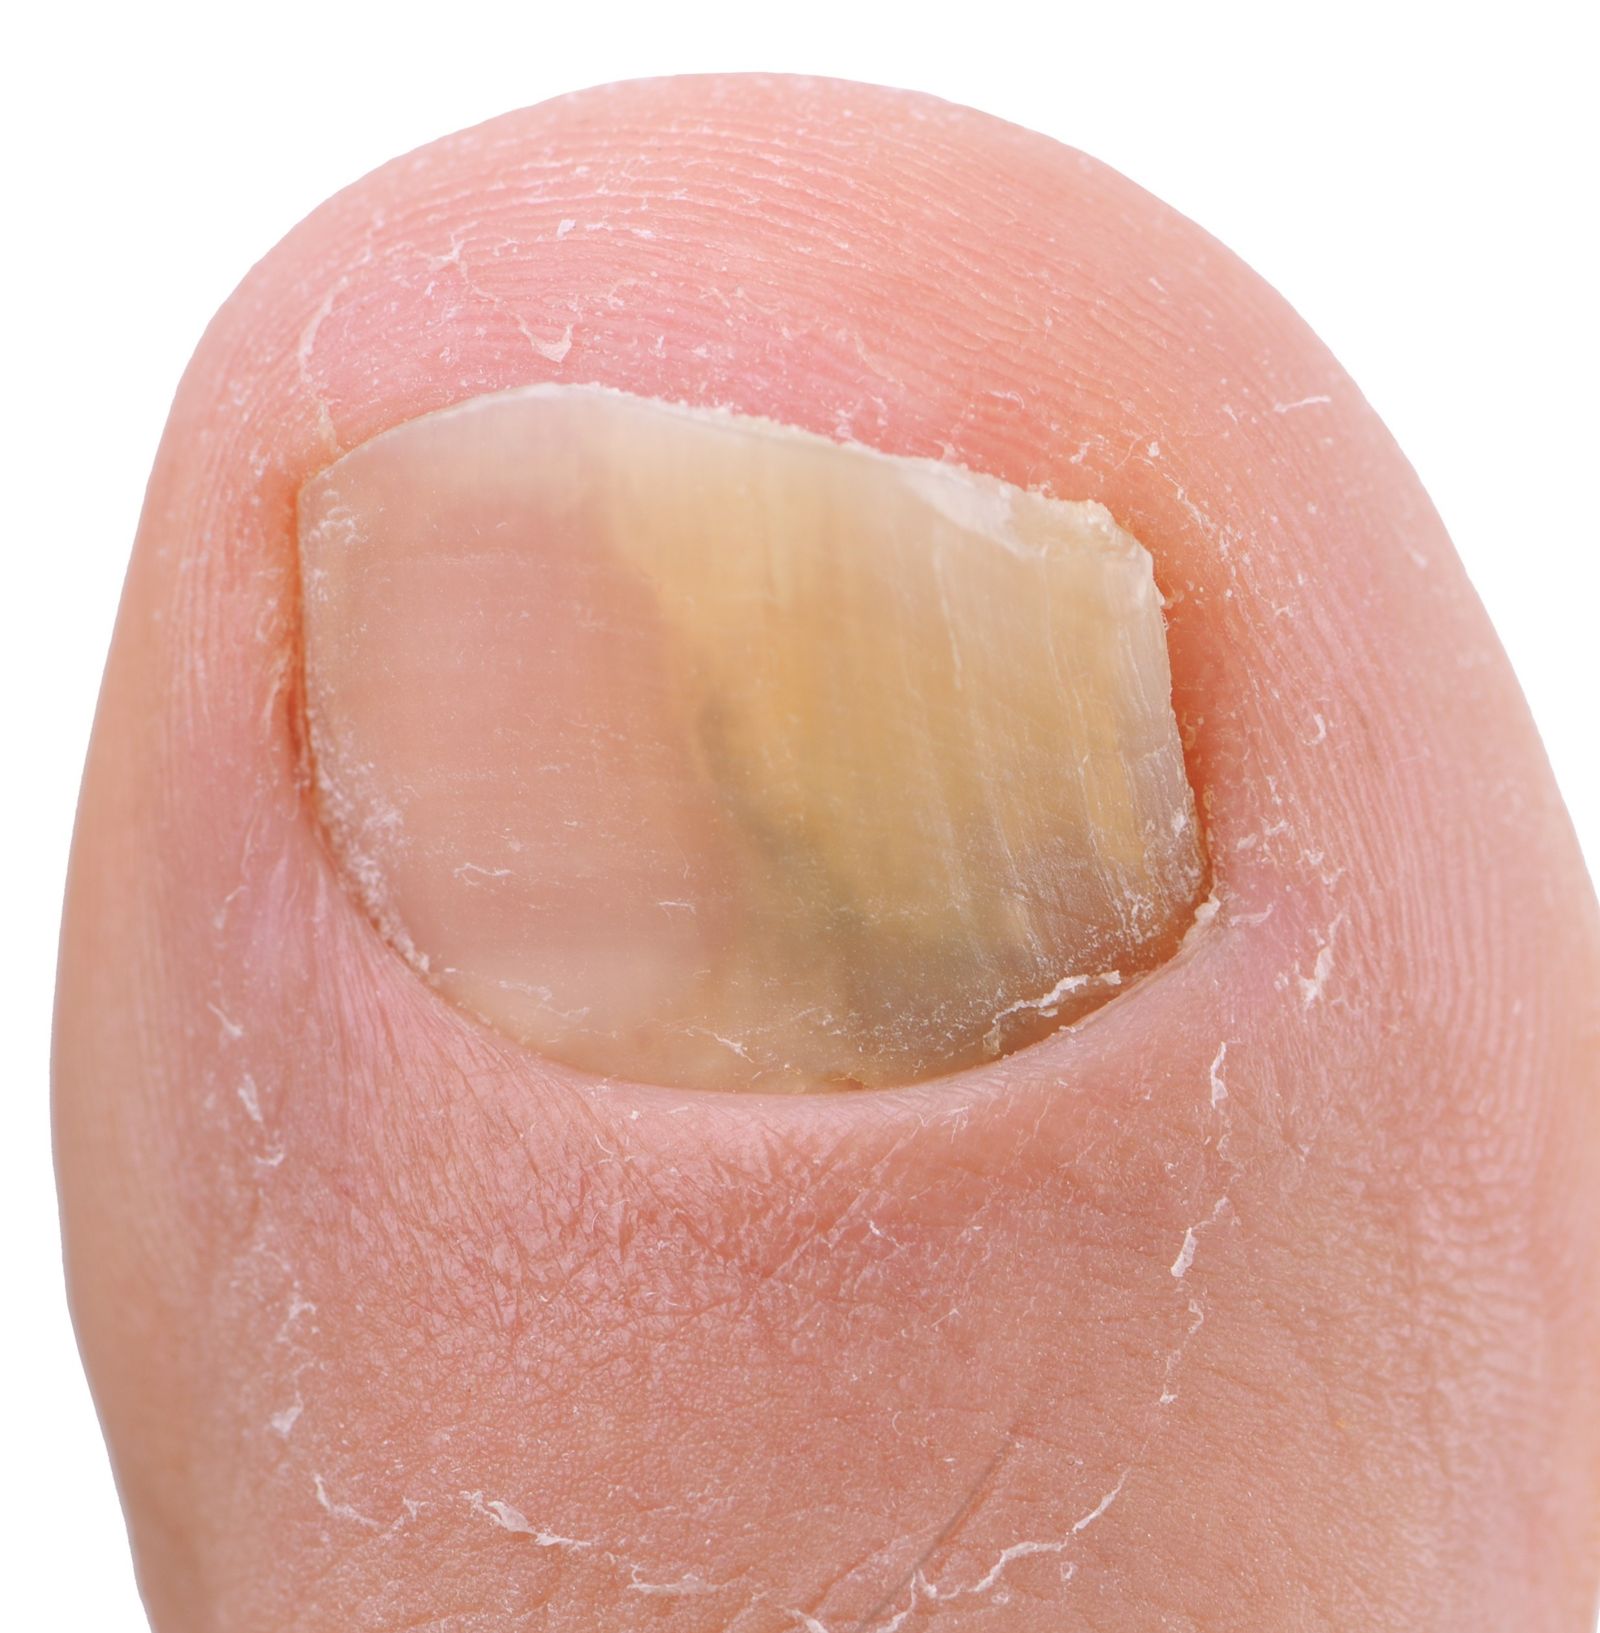 How should a diabetic cut their toenails? - Quora